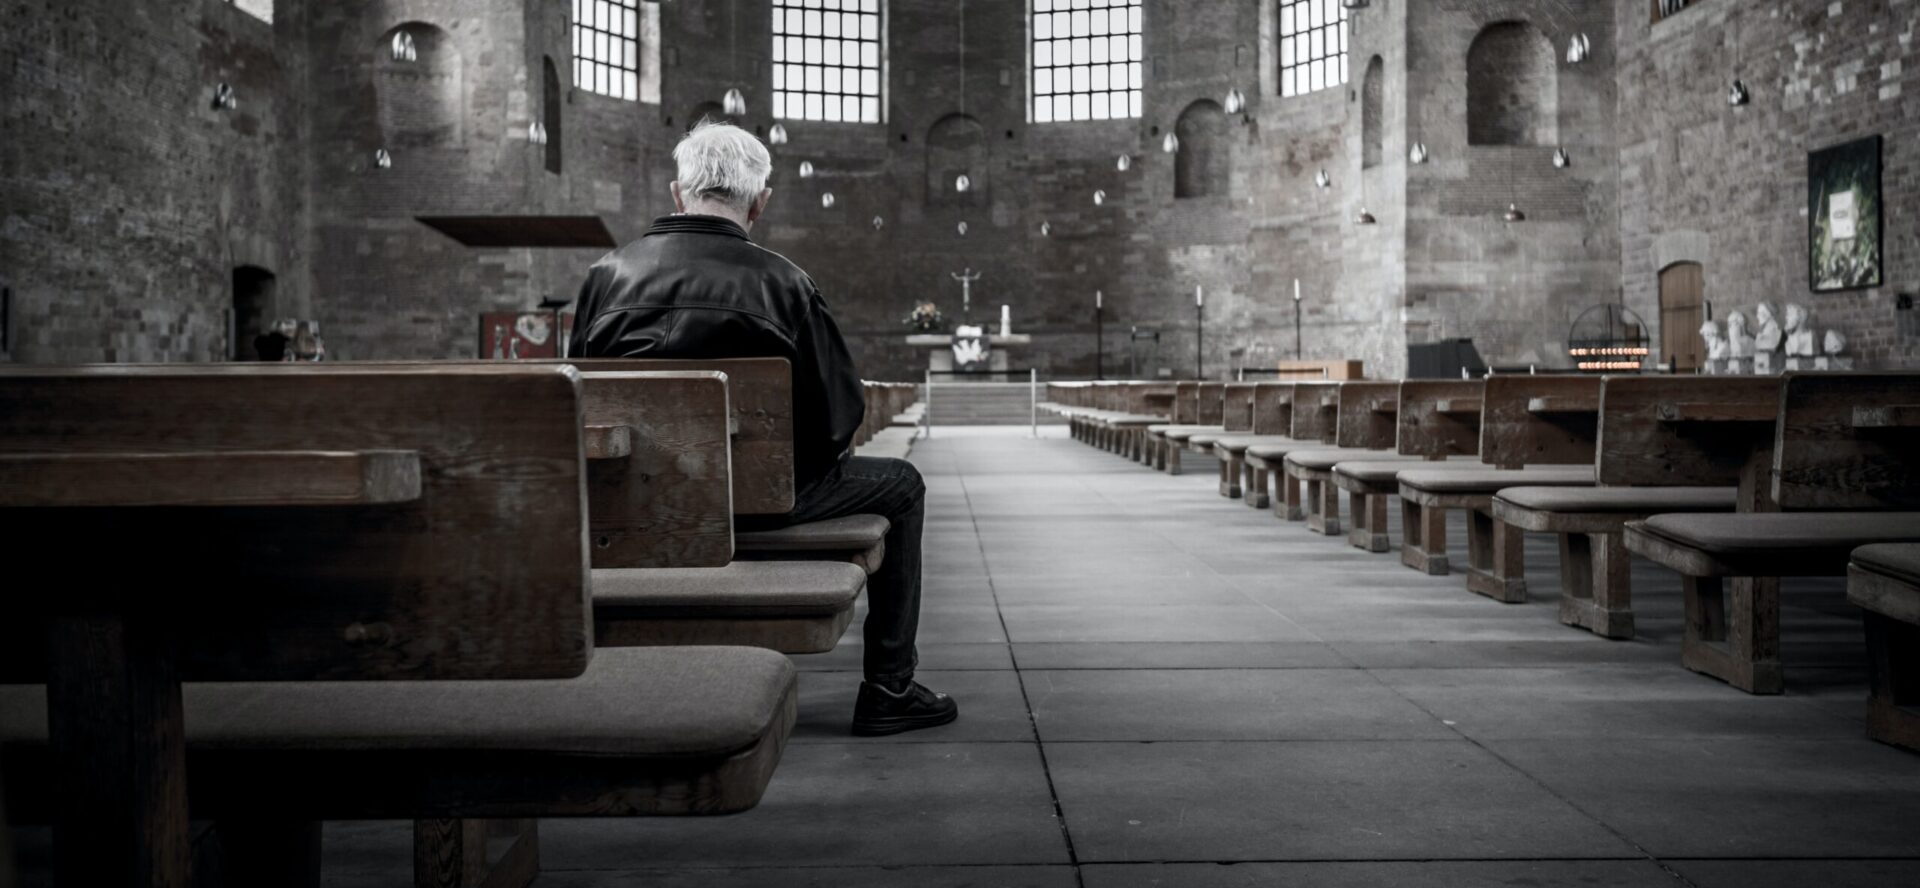 Les églises dans nos contrées attirent de moins en moins de monde | © Stefan Kunze/Unsplash